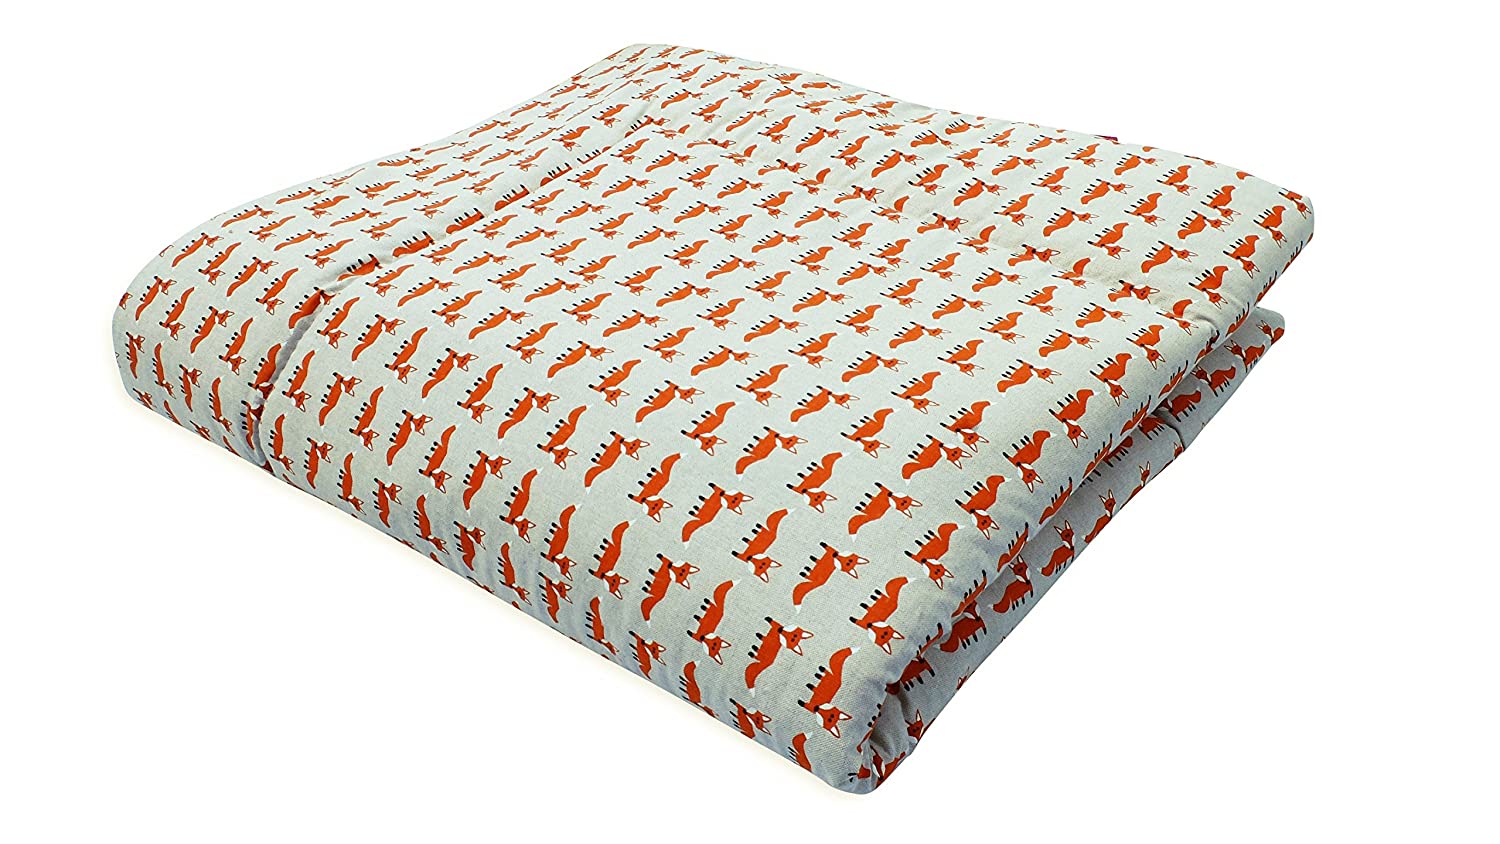 Ideenreich 2384 Crawling Blanket King Playpen Mattress, 120 x 120 cm brown